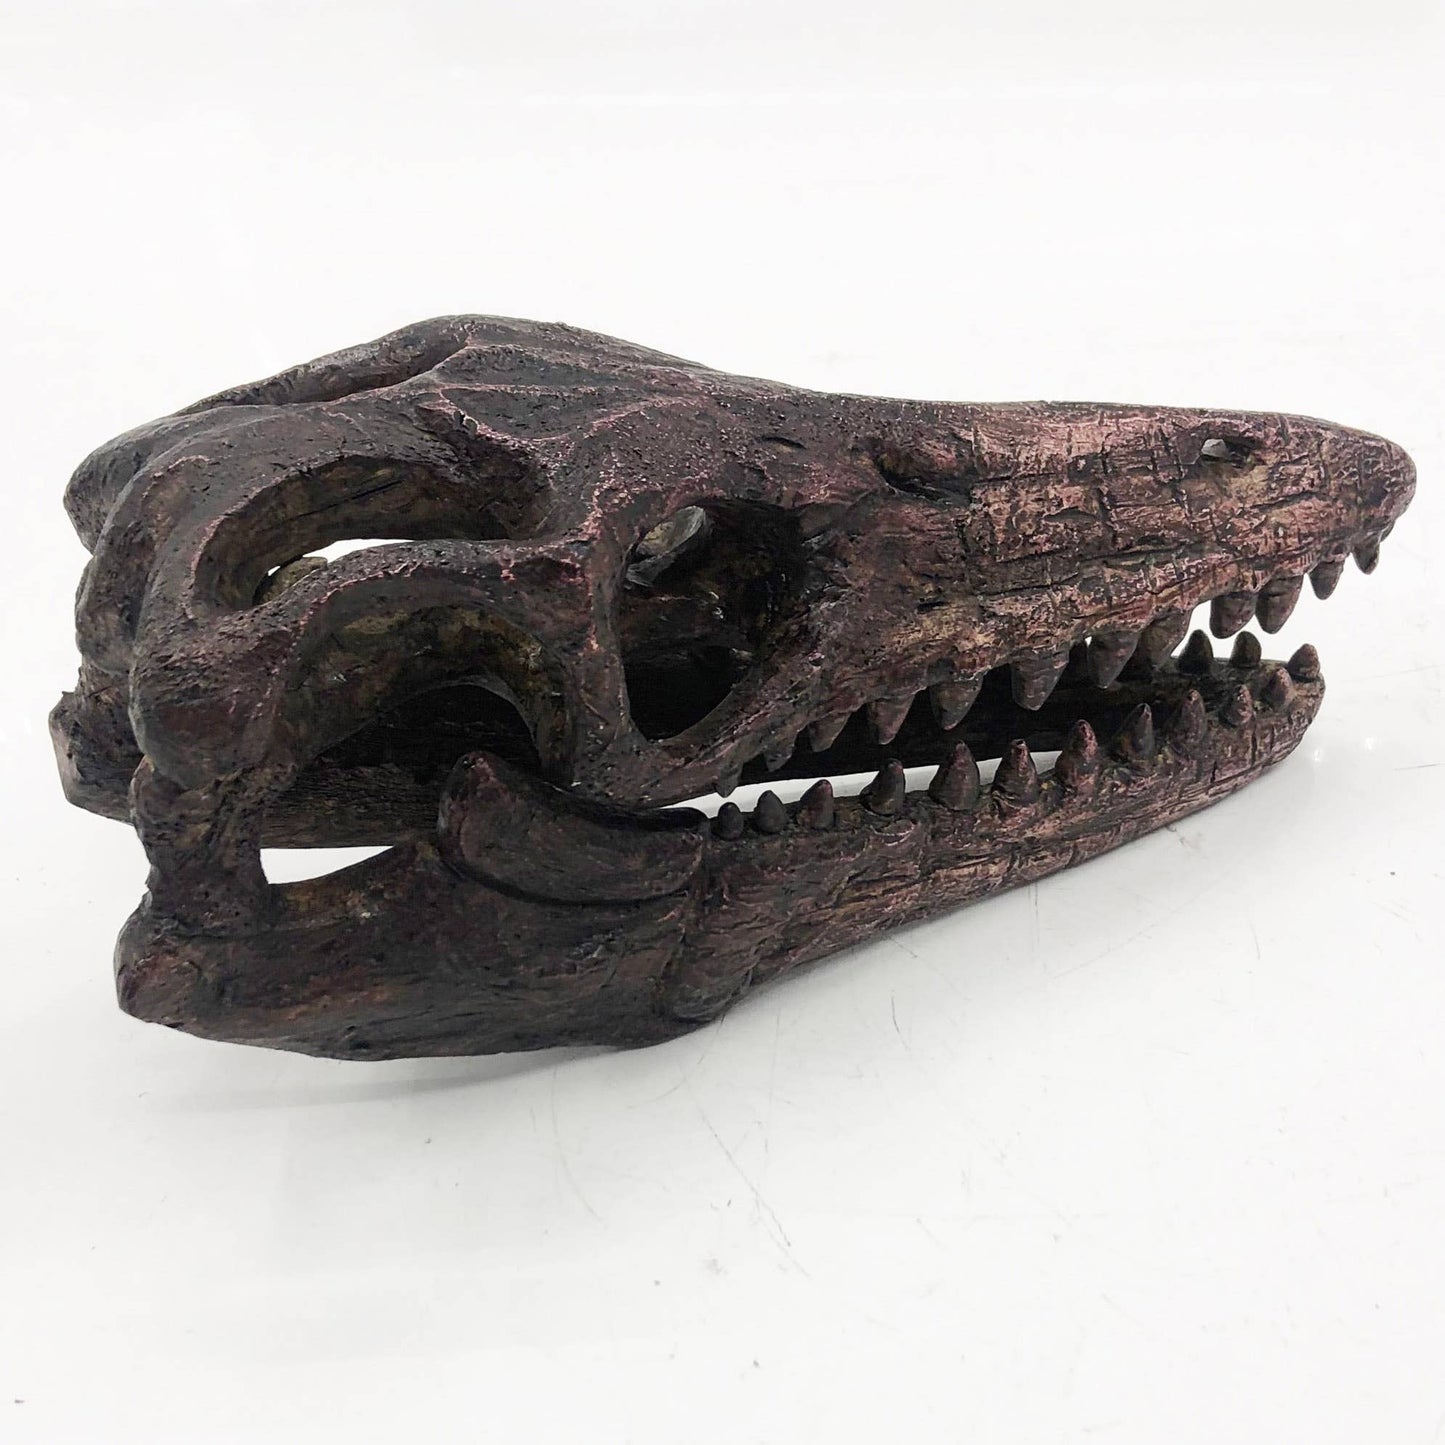 Replica Mosasaurus Mini Dinosaur Fossil Skull - Stemcell Science Shop